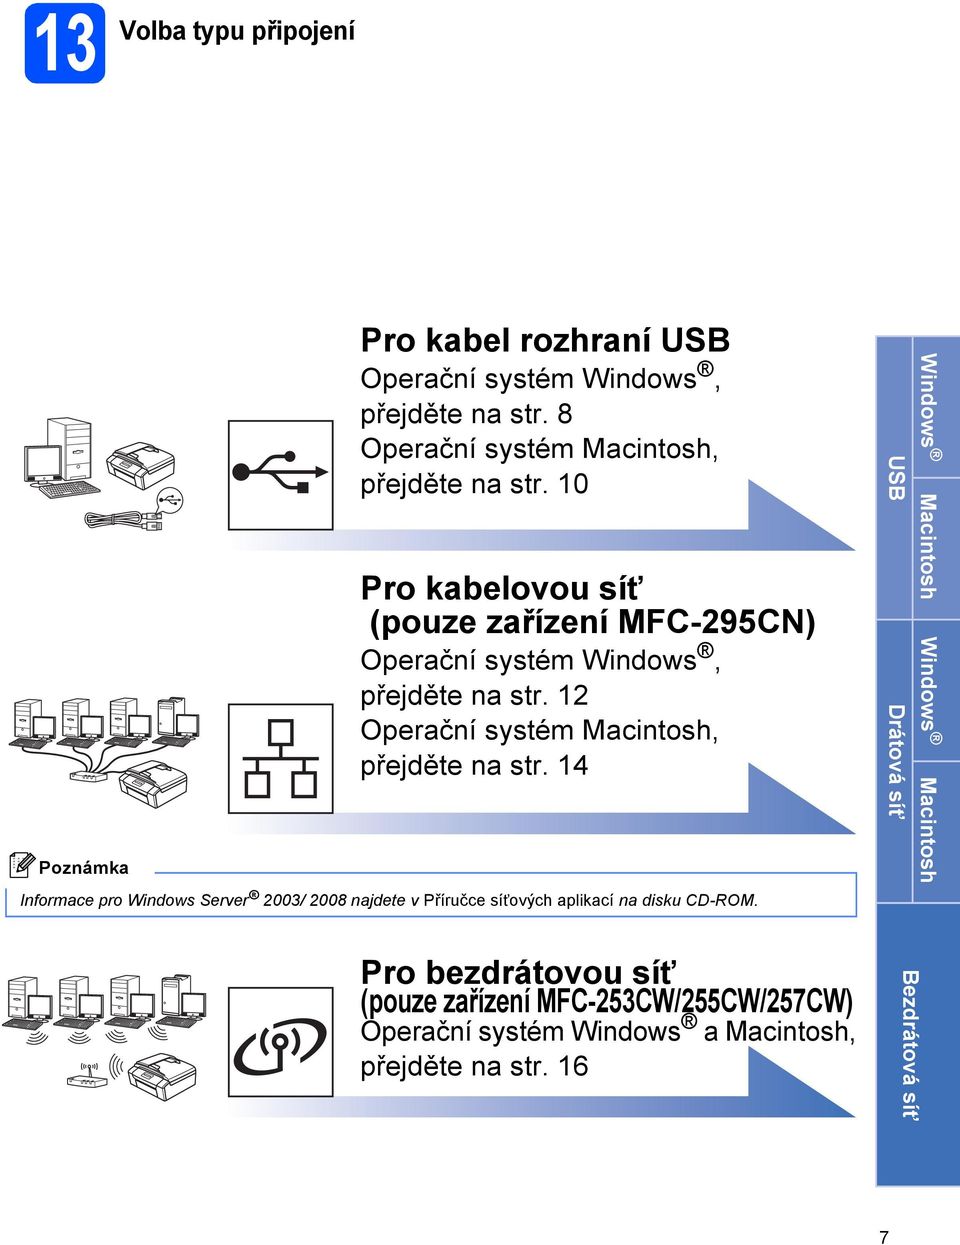 12 Operční systém Mintosh, přejěte n str. 14 Informe pro Winows Server 2003/ 2008 njete v Příruče síñovýh plikí n isku CD-ROM.